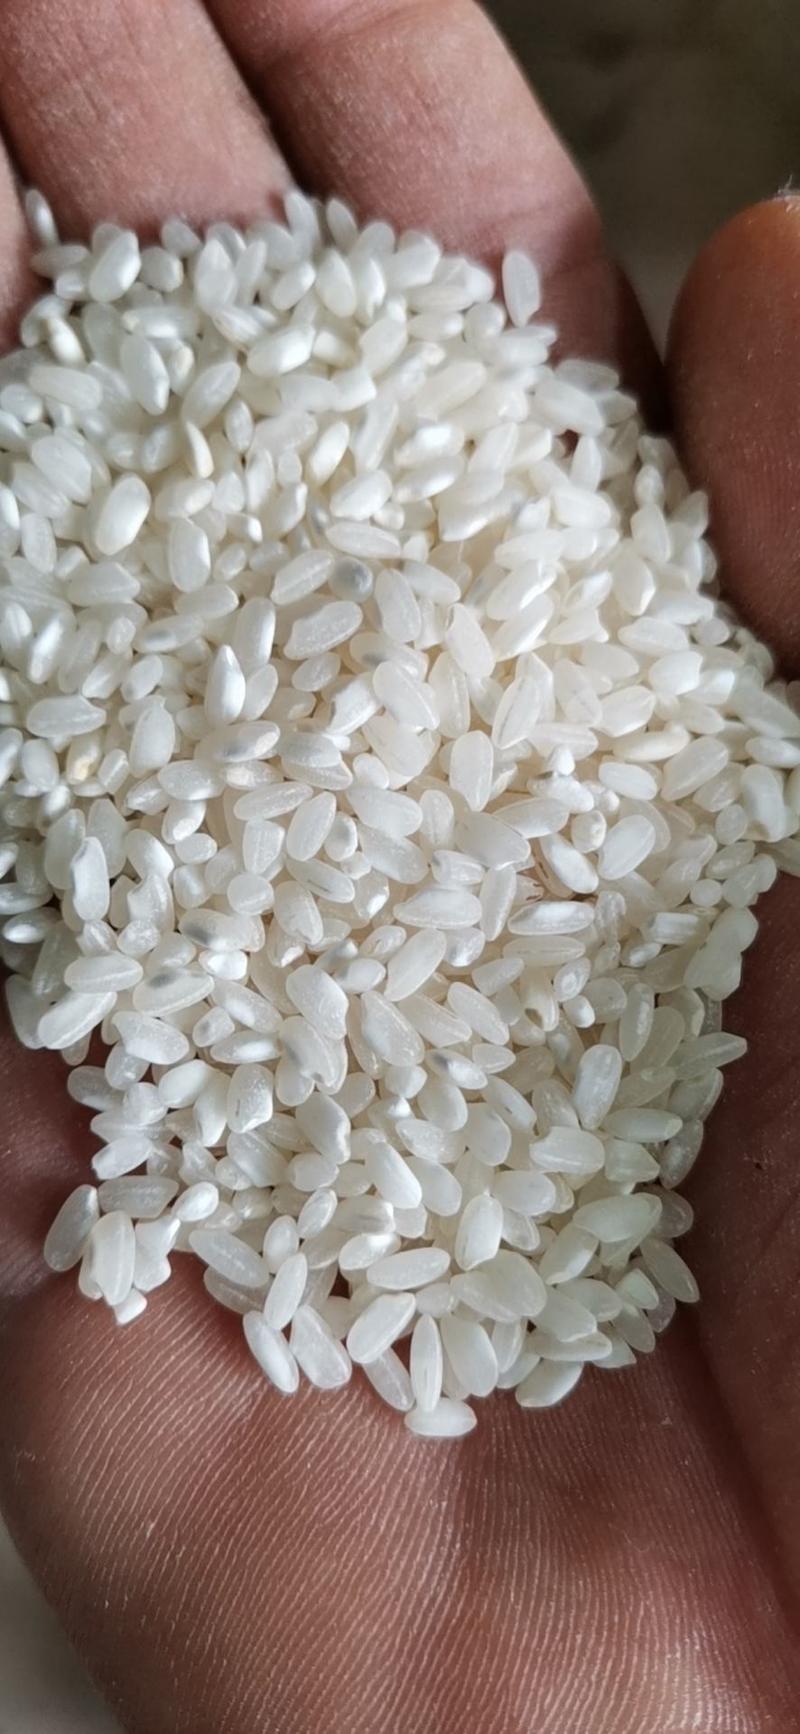 湖南籼米桂潮米专业加工米粉米线米皮米糕米豆腐肠粉等深加工